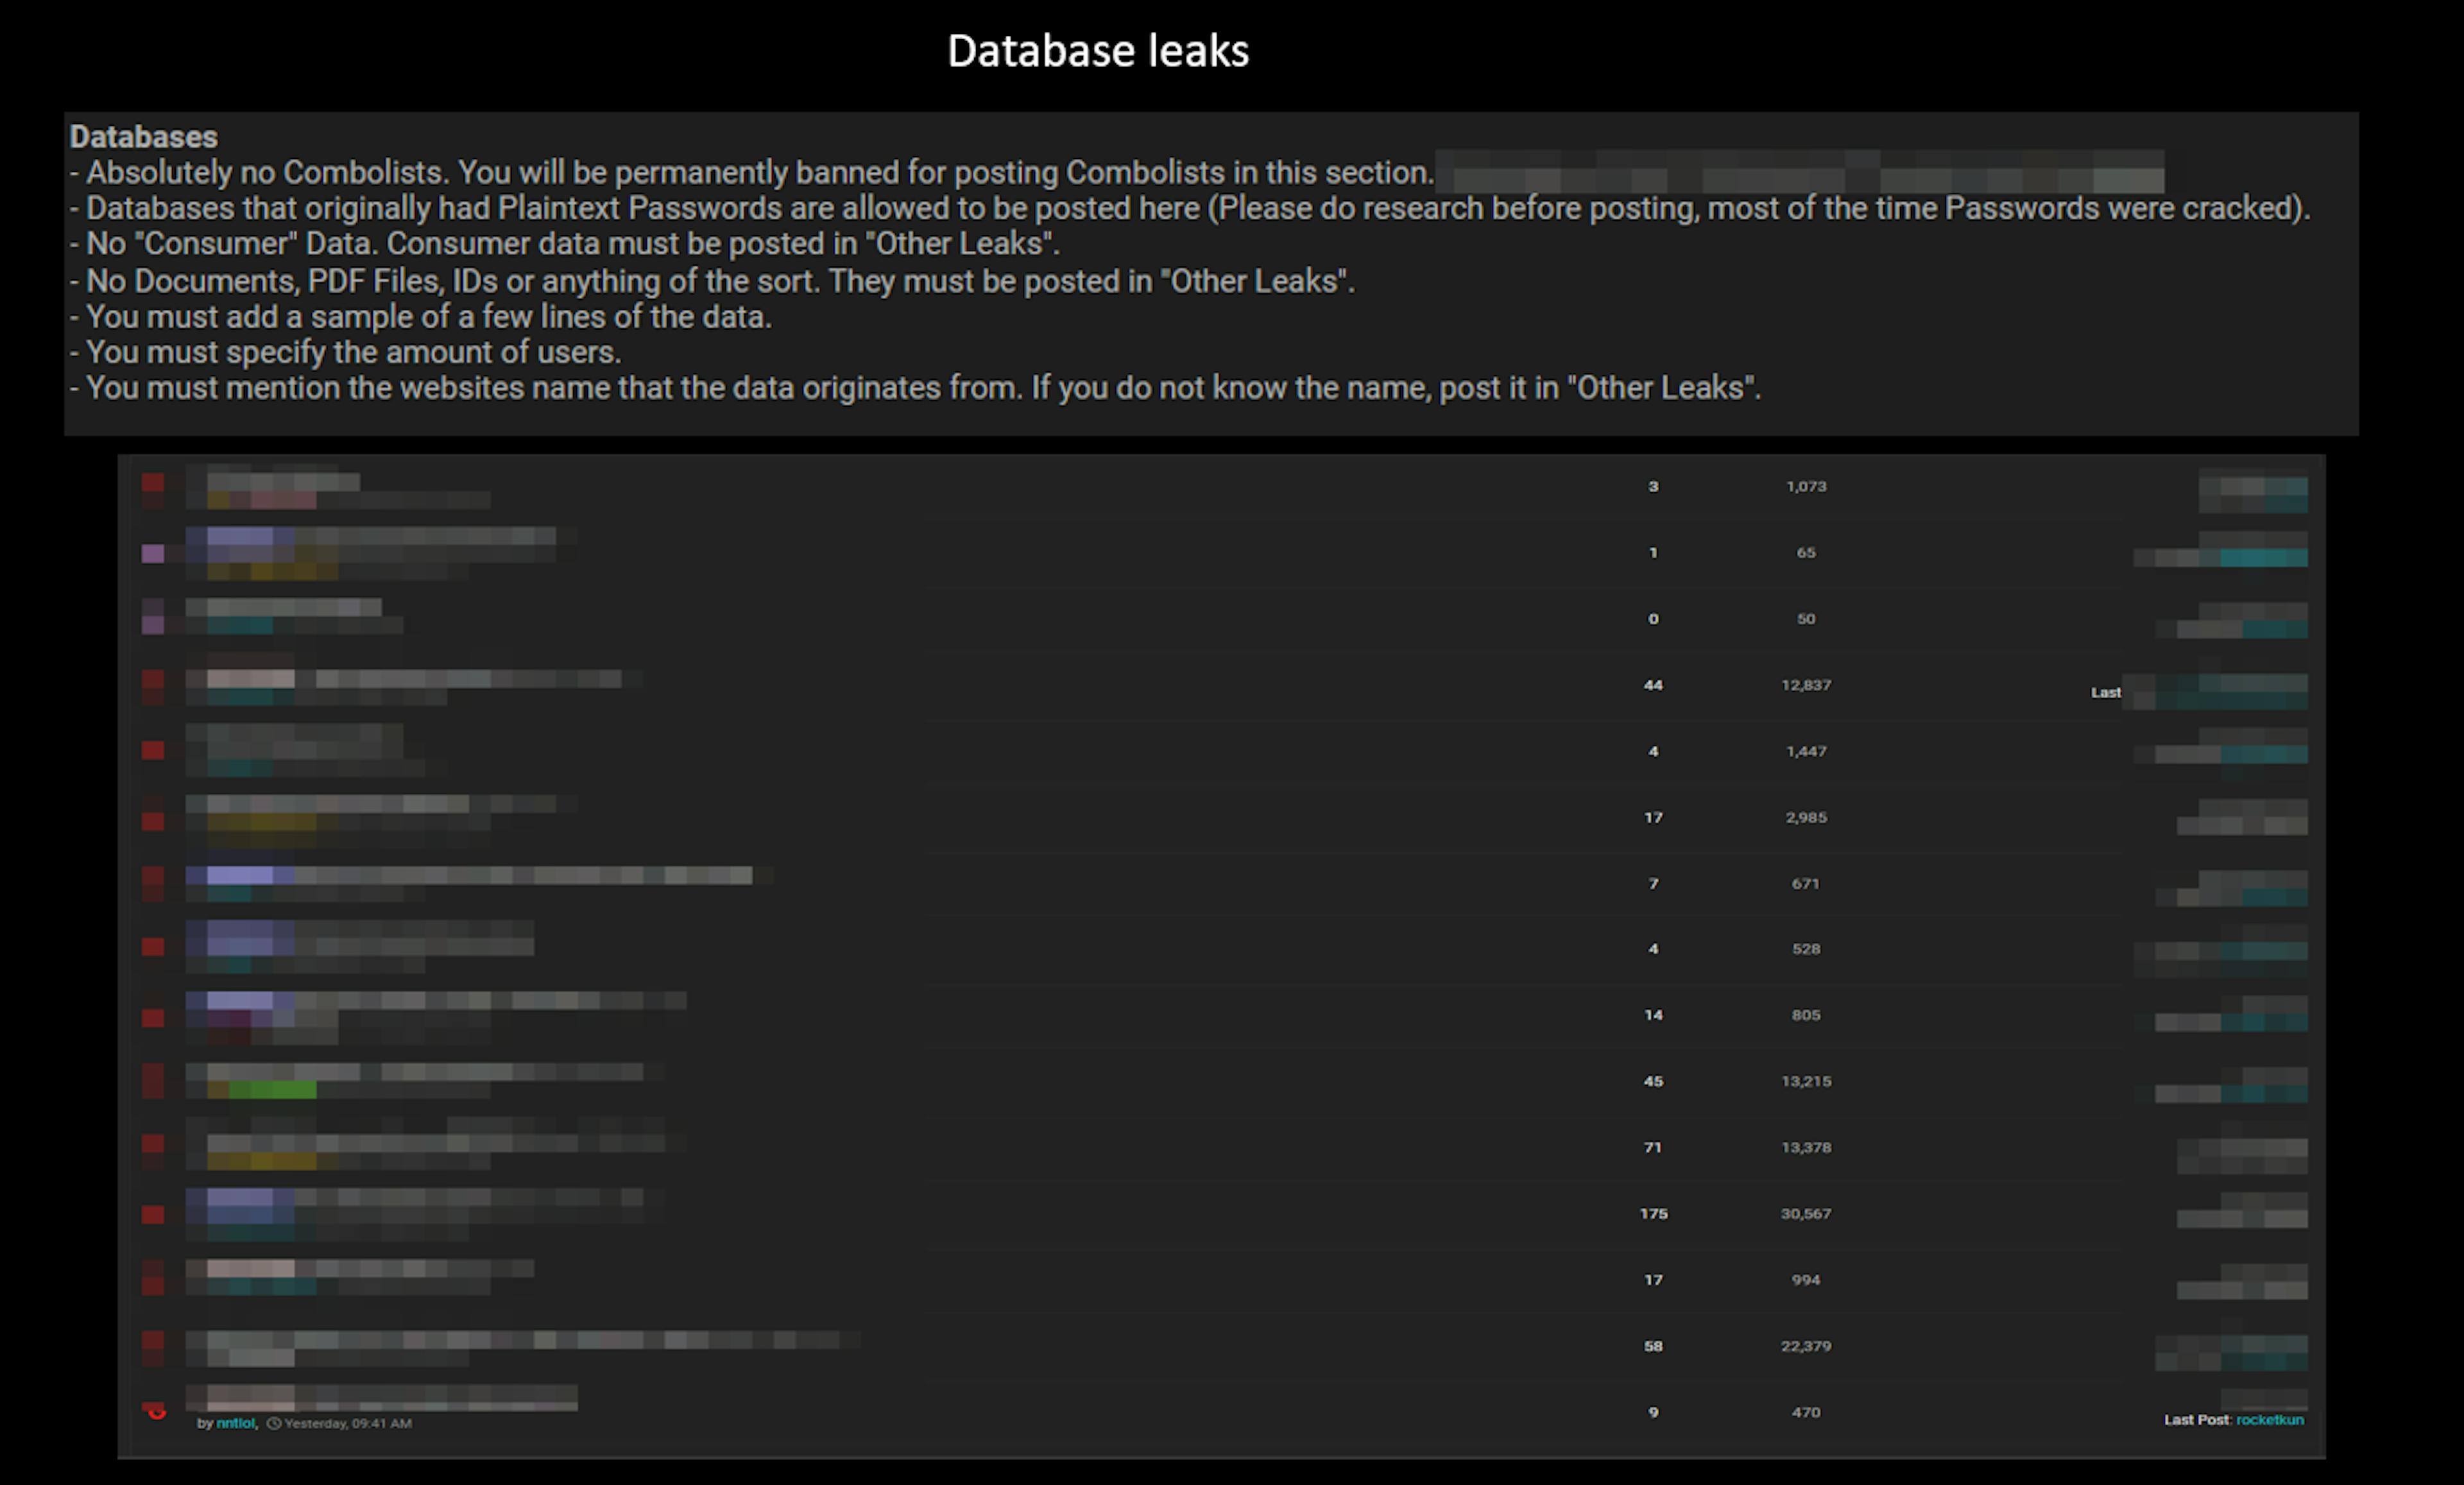 Database leak rules